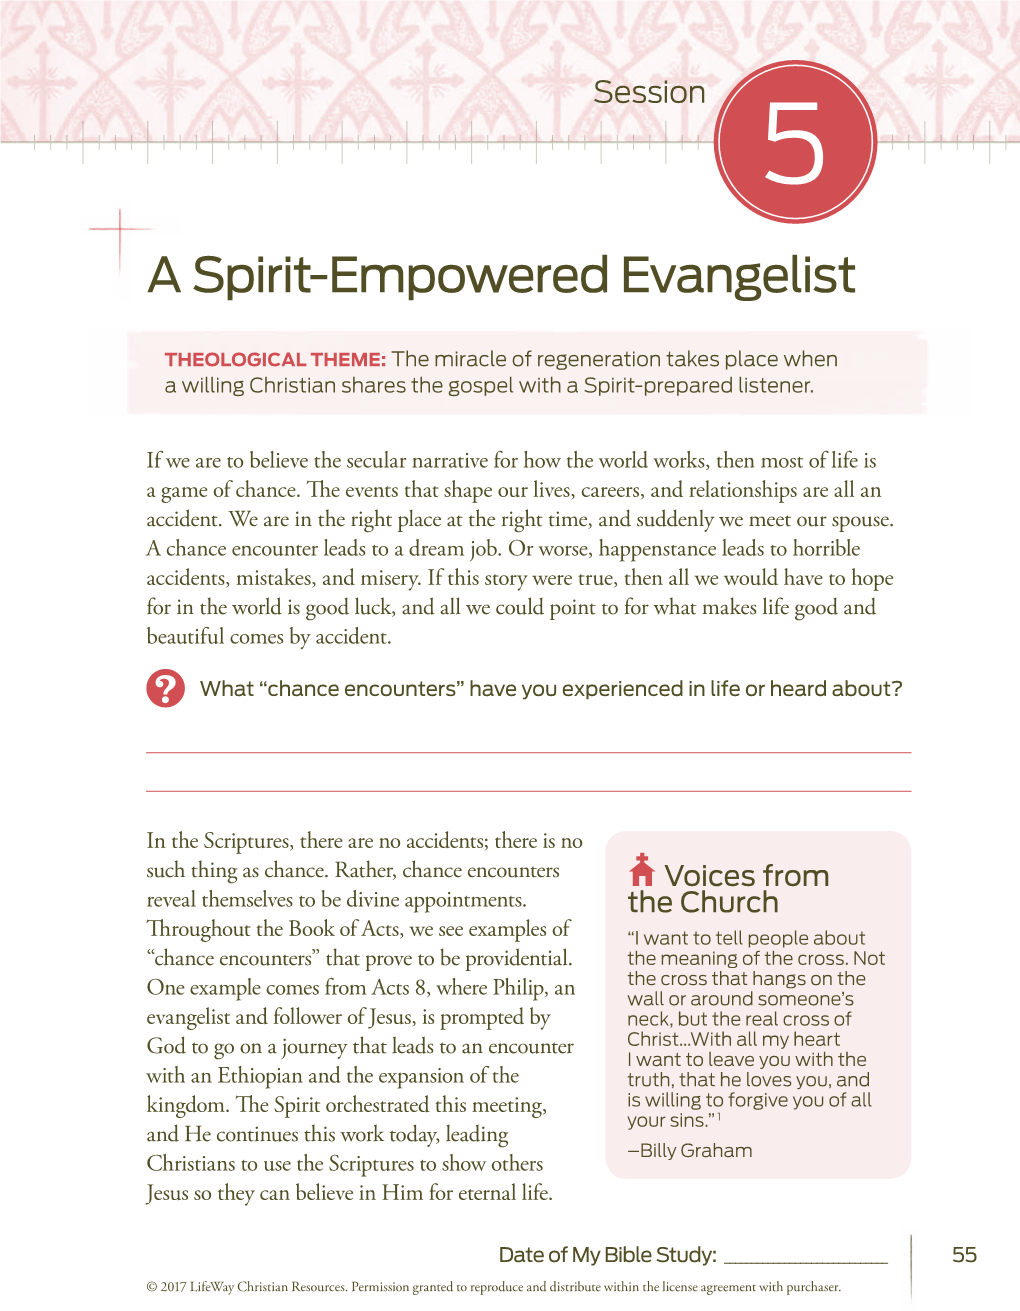 A Spirit-Empowered Evangelist